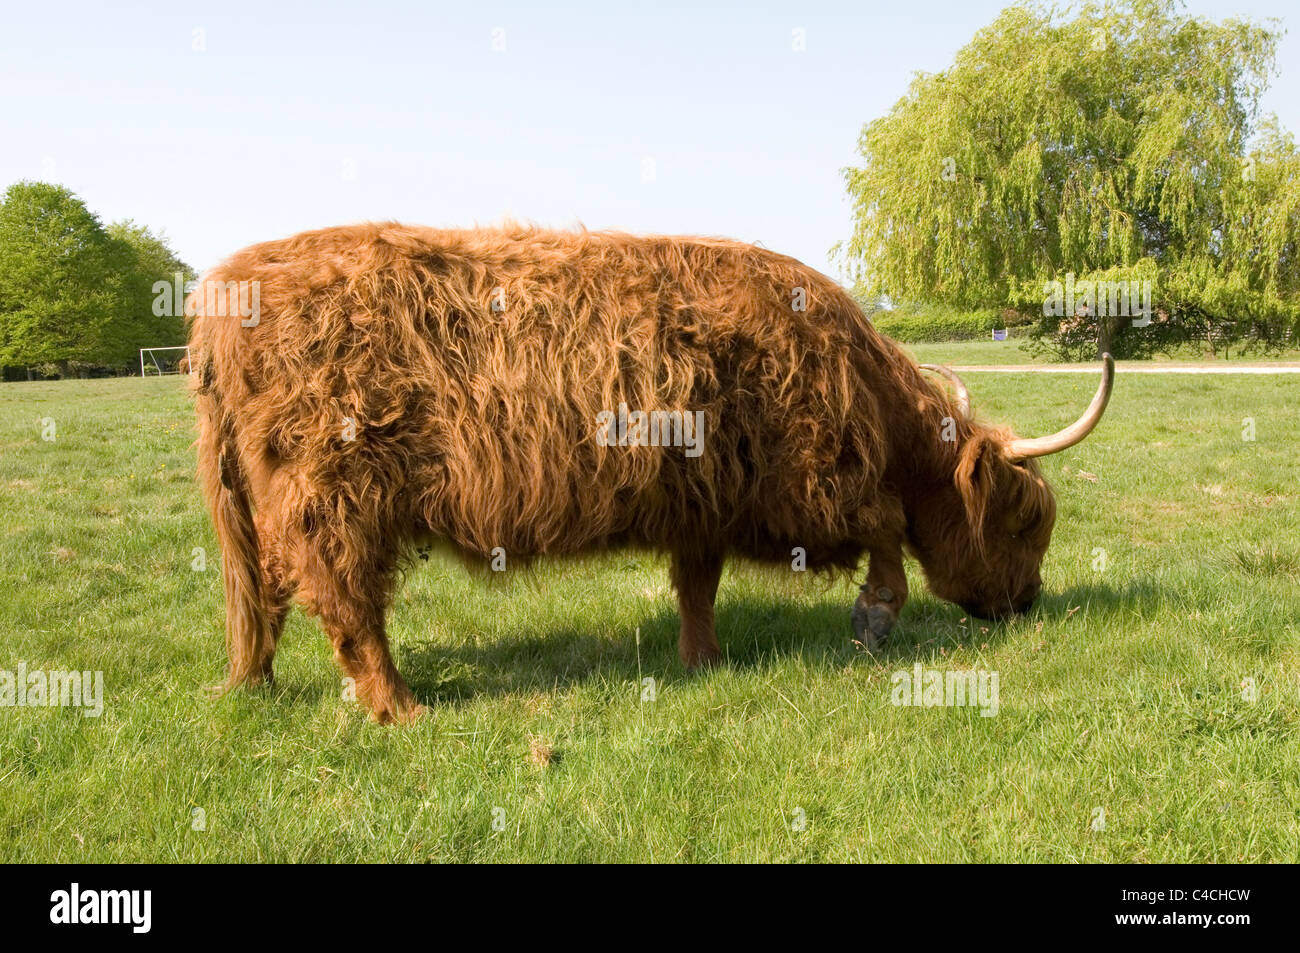 Vache poilue vaches Highland cattle laineux shaggy longue corne cornes bulls steer steer paître sur les terres de pâturage Banque D'Images